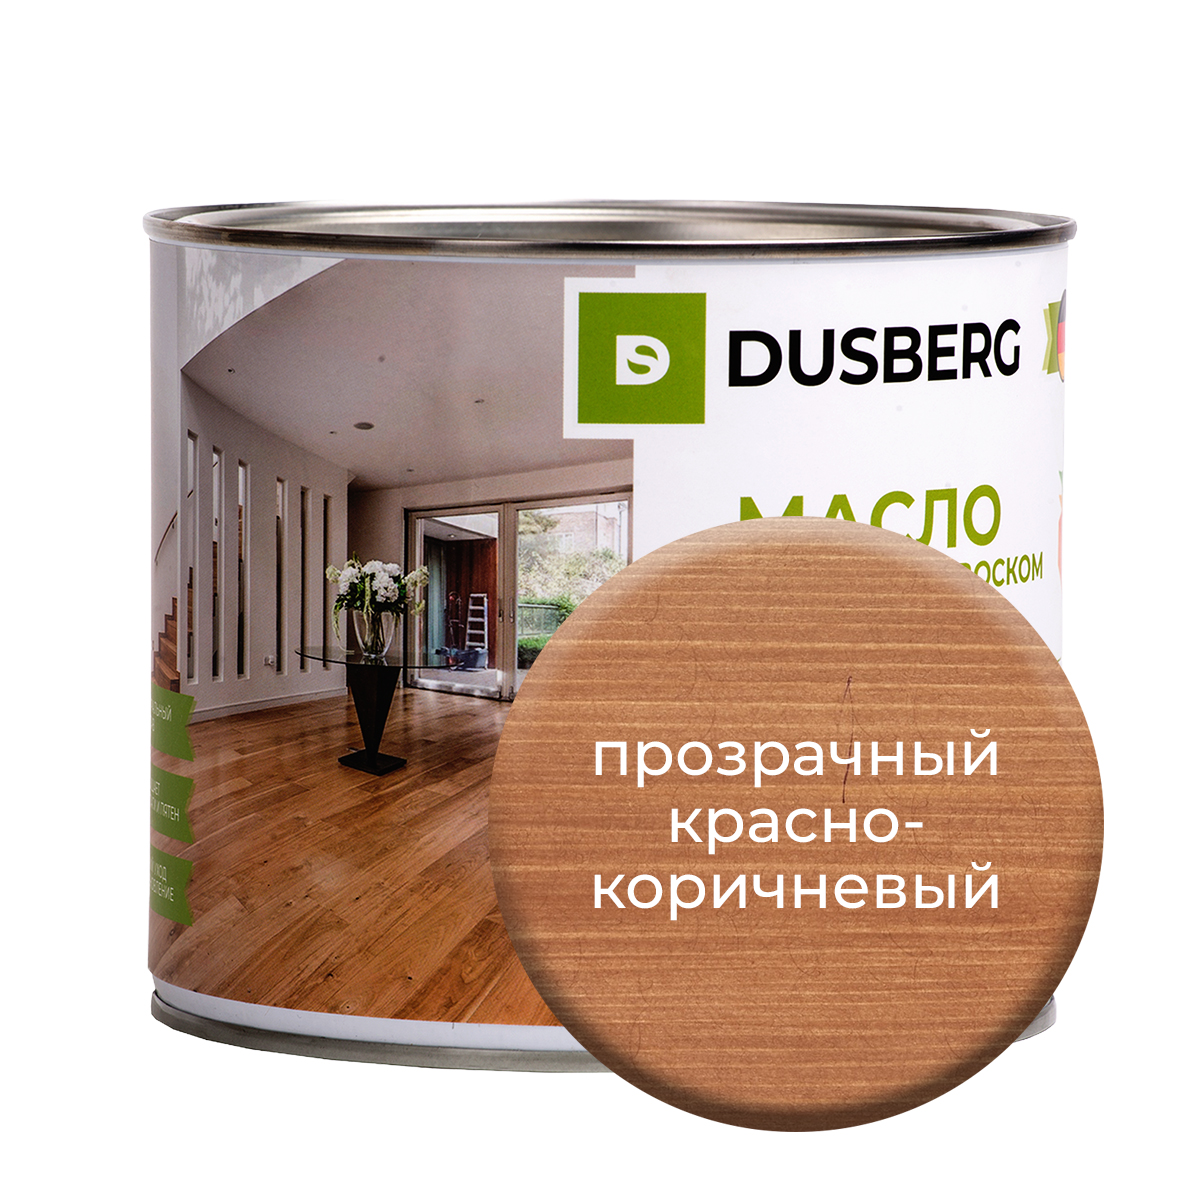 Масло Dusberg для стен, 2л Прозрачный красно-коричневый